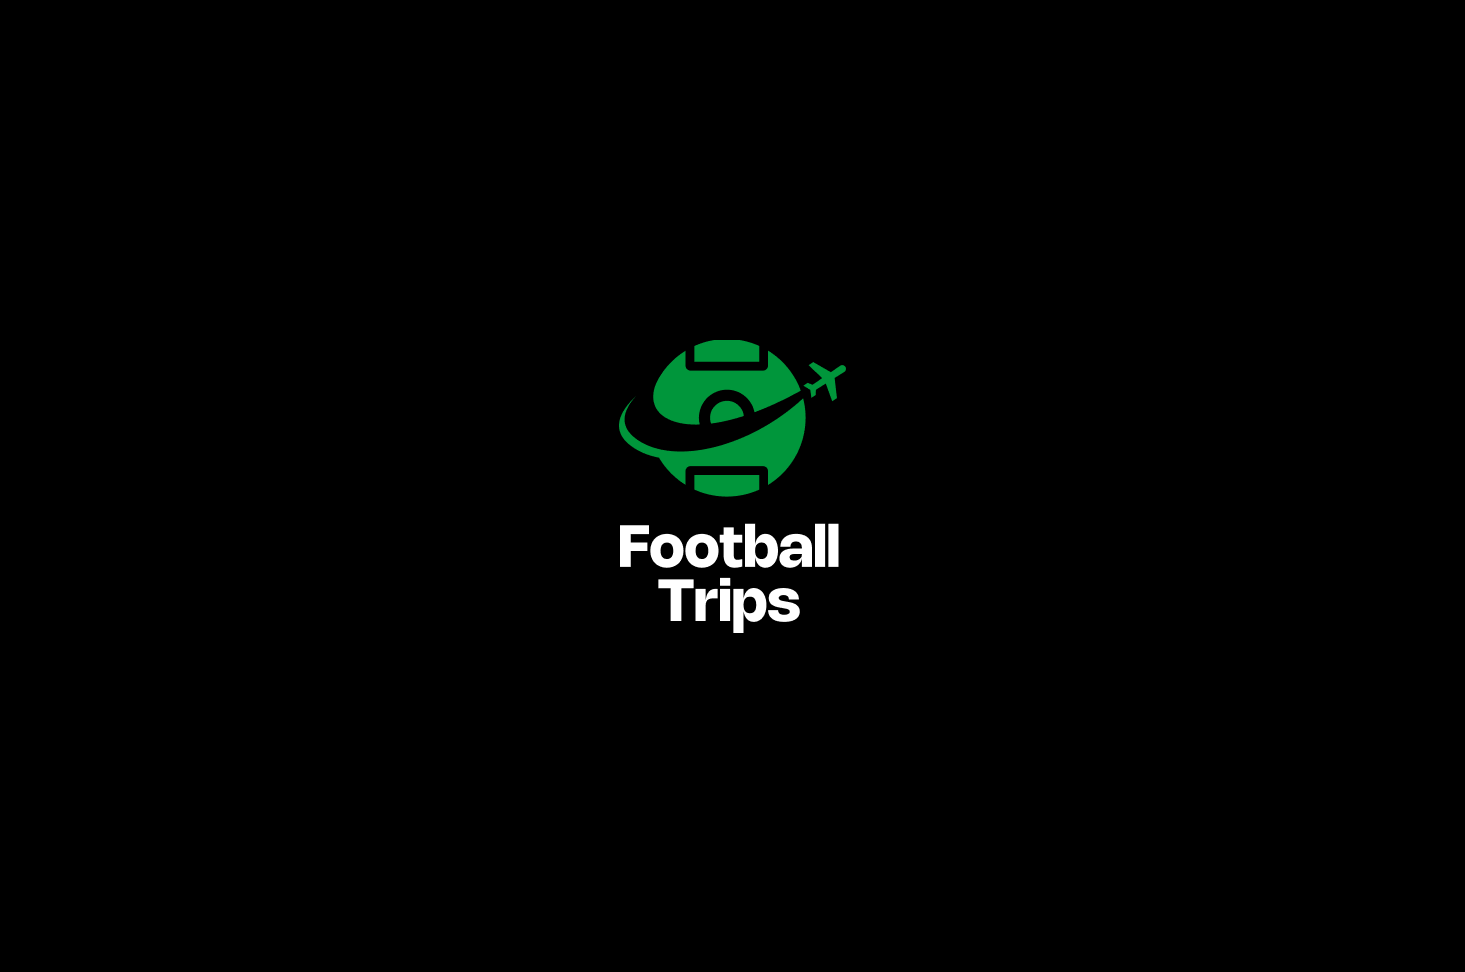 footbal-trips-logo2.png